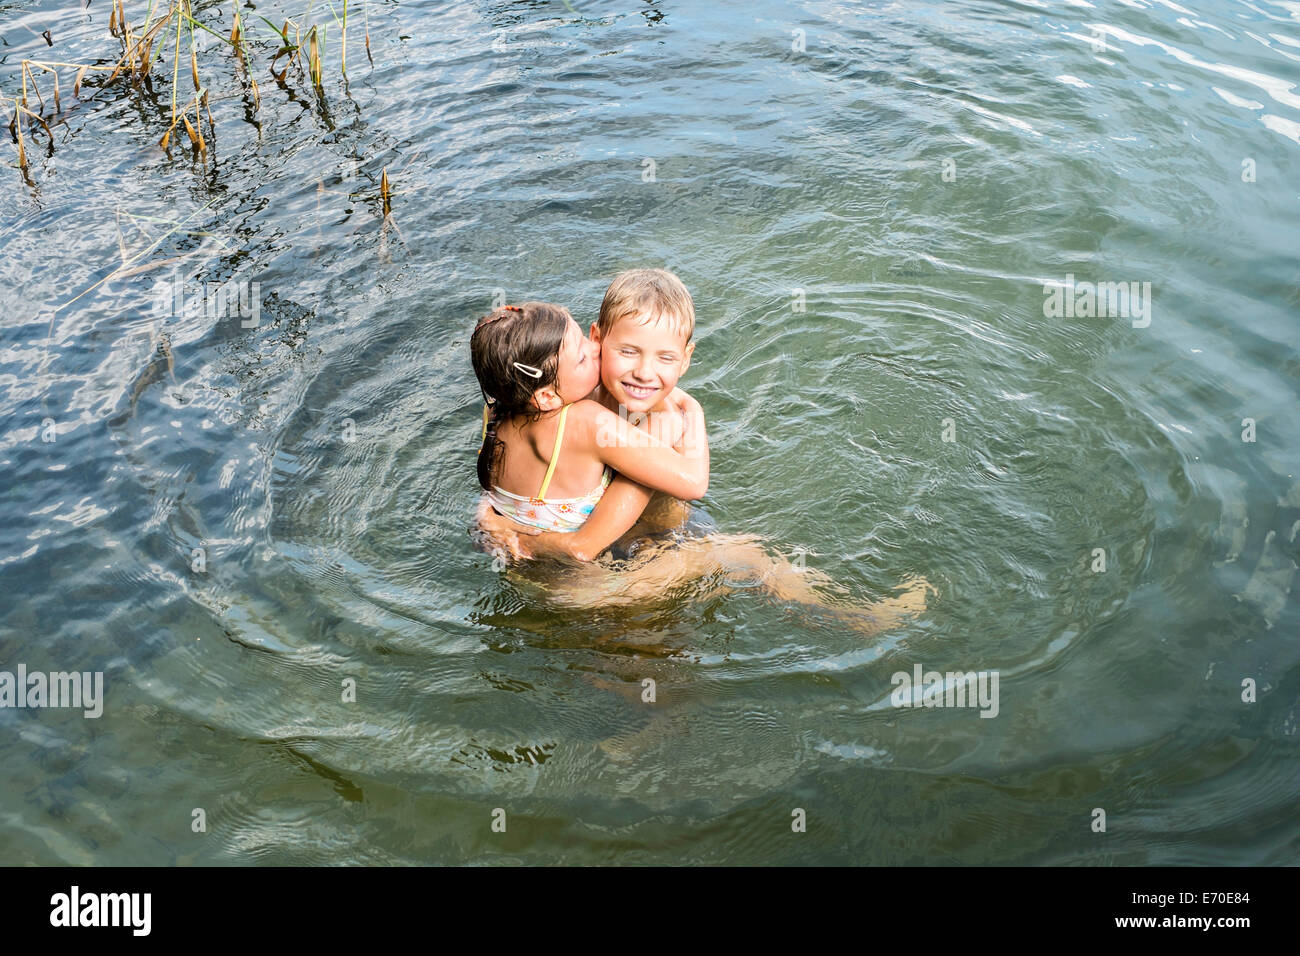 Famiglia godendo di una nuotata, Zelwa Lago, Giby, Polonia Foto Stock